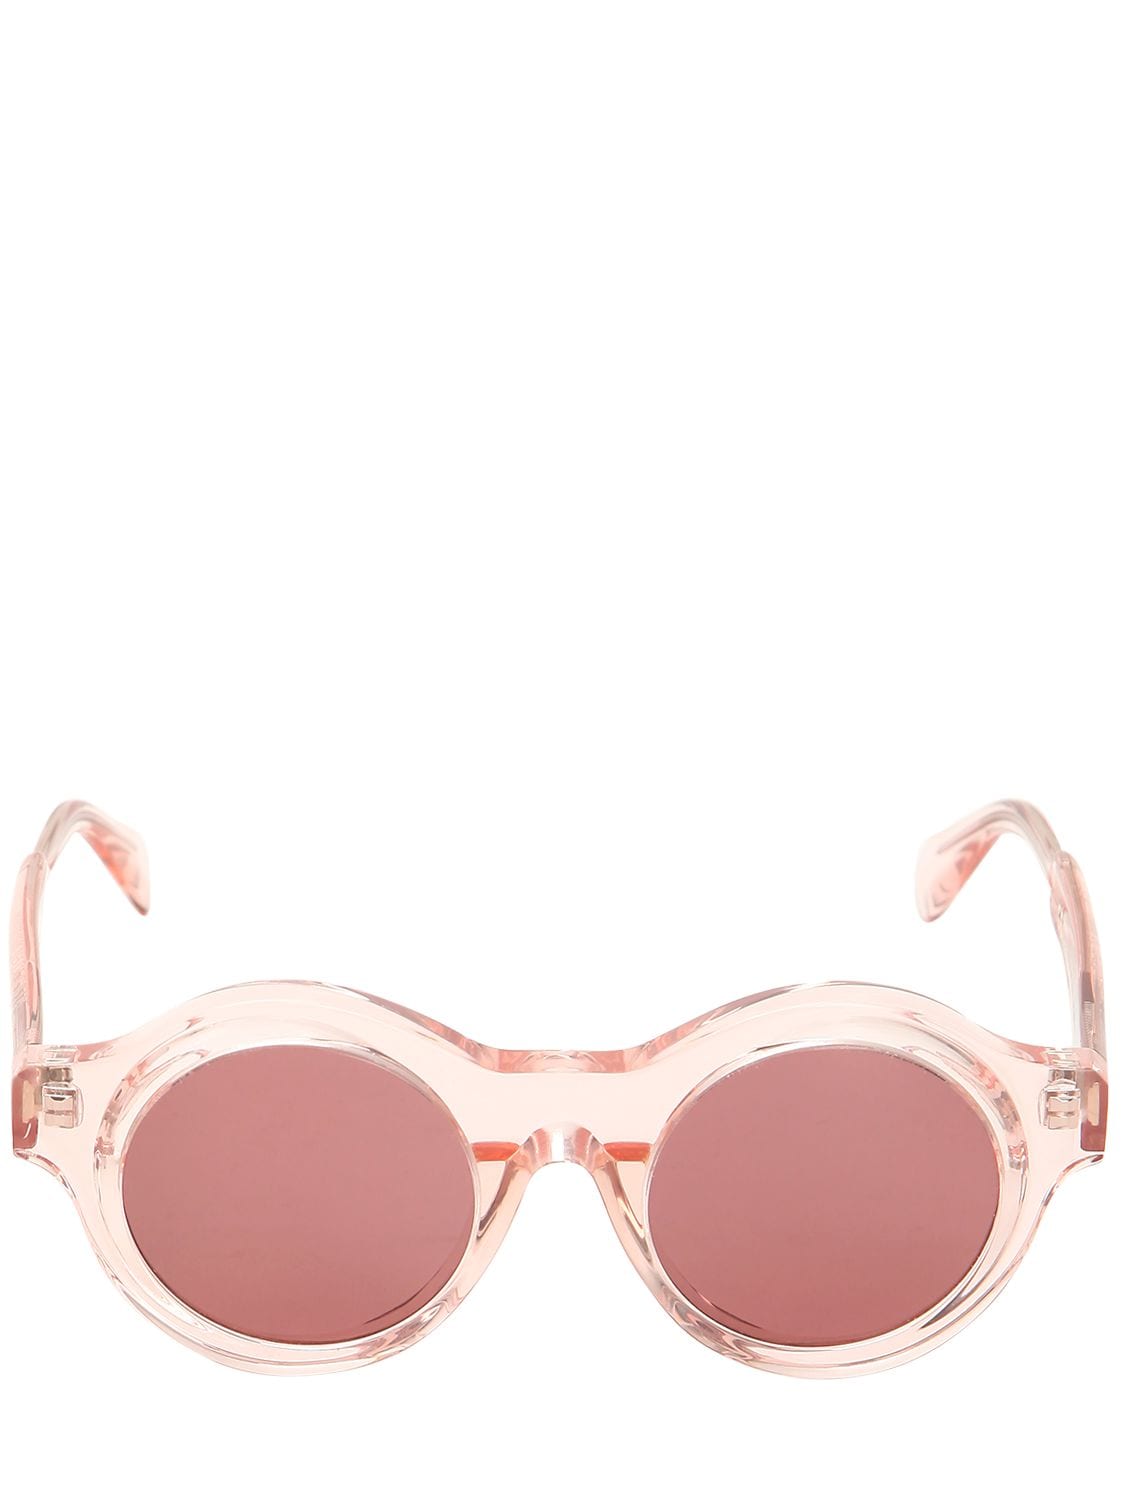 Kuboraum Berlin Round Pink Sunglasses In Light Pink